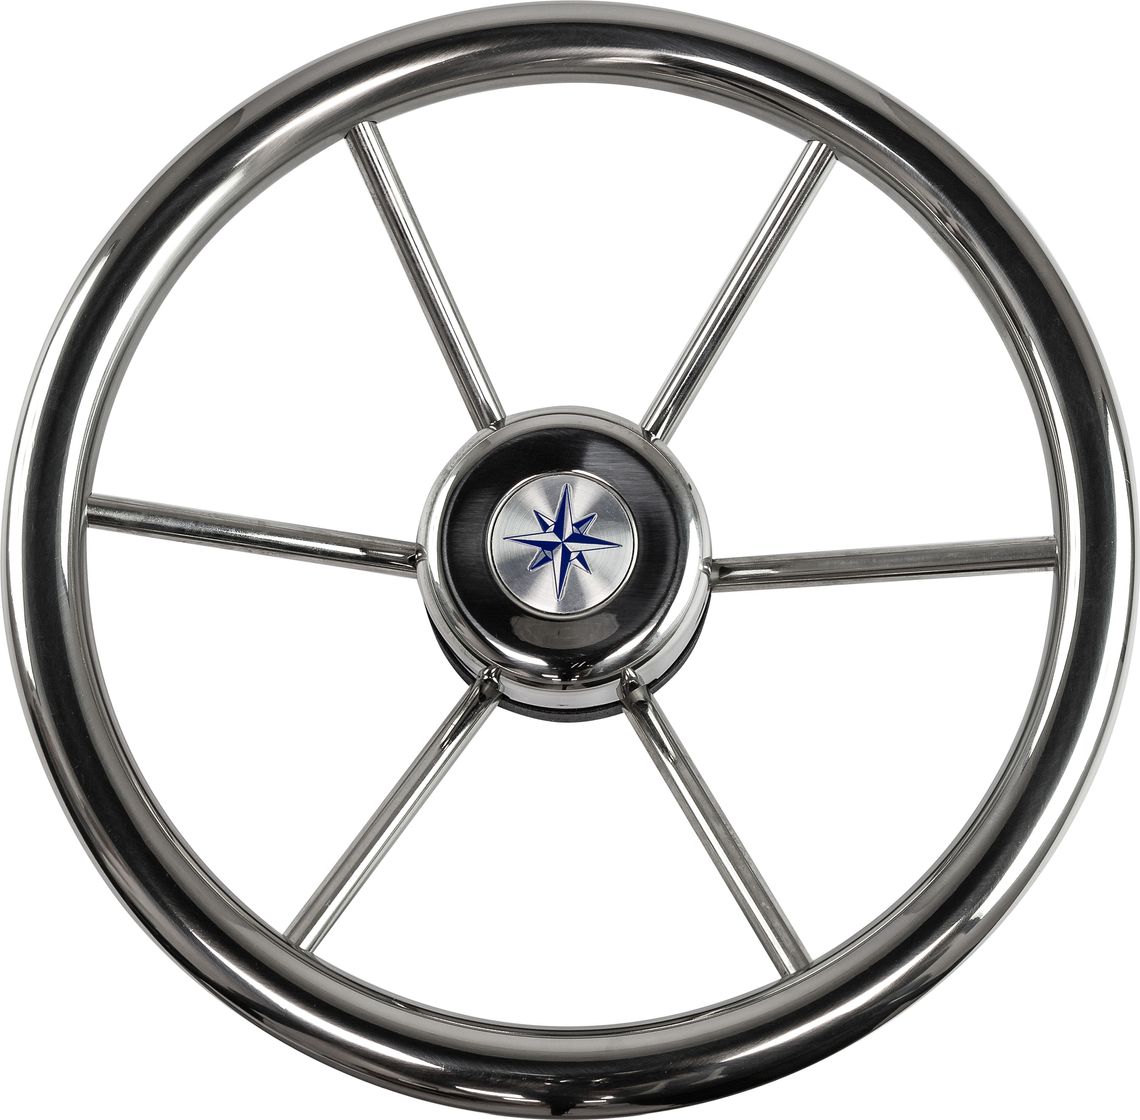 Рулевое колесо LEADER INOX нержавеющий обод серебряные спицы д. 320 мм VN7332-22 рулевое колесо leader plast обод серебряные спицы д 360 мм vn8360 01